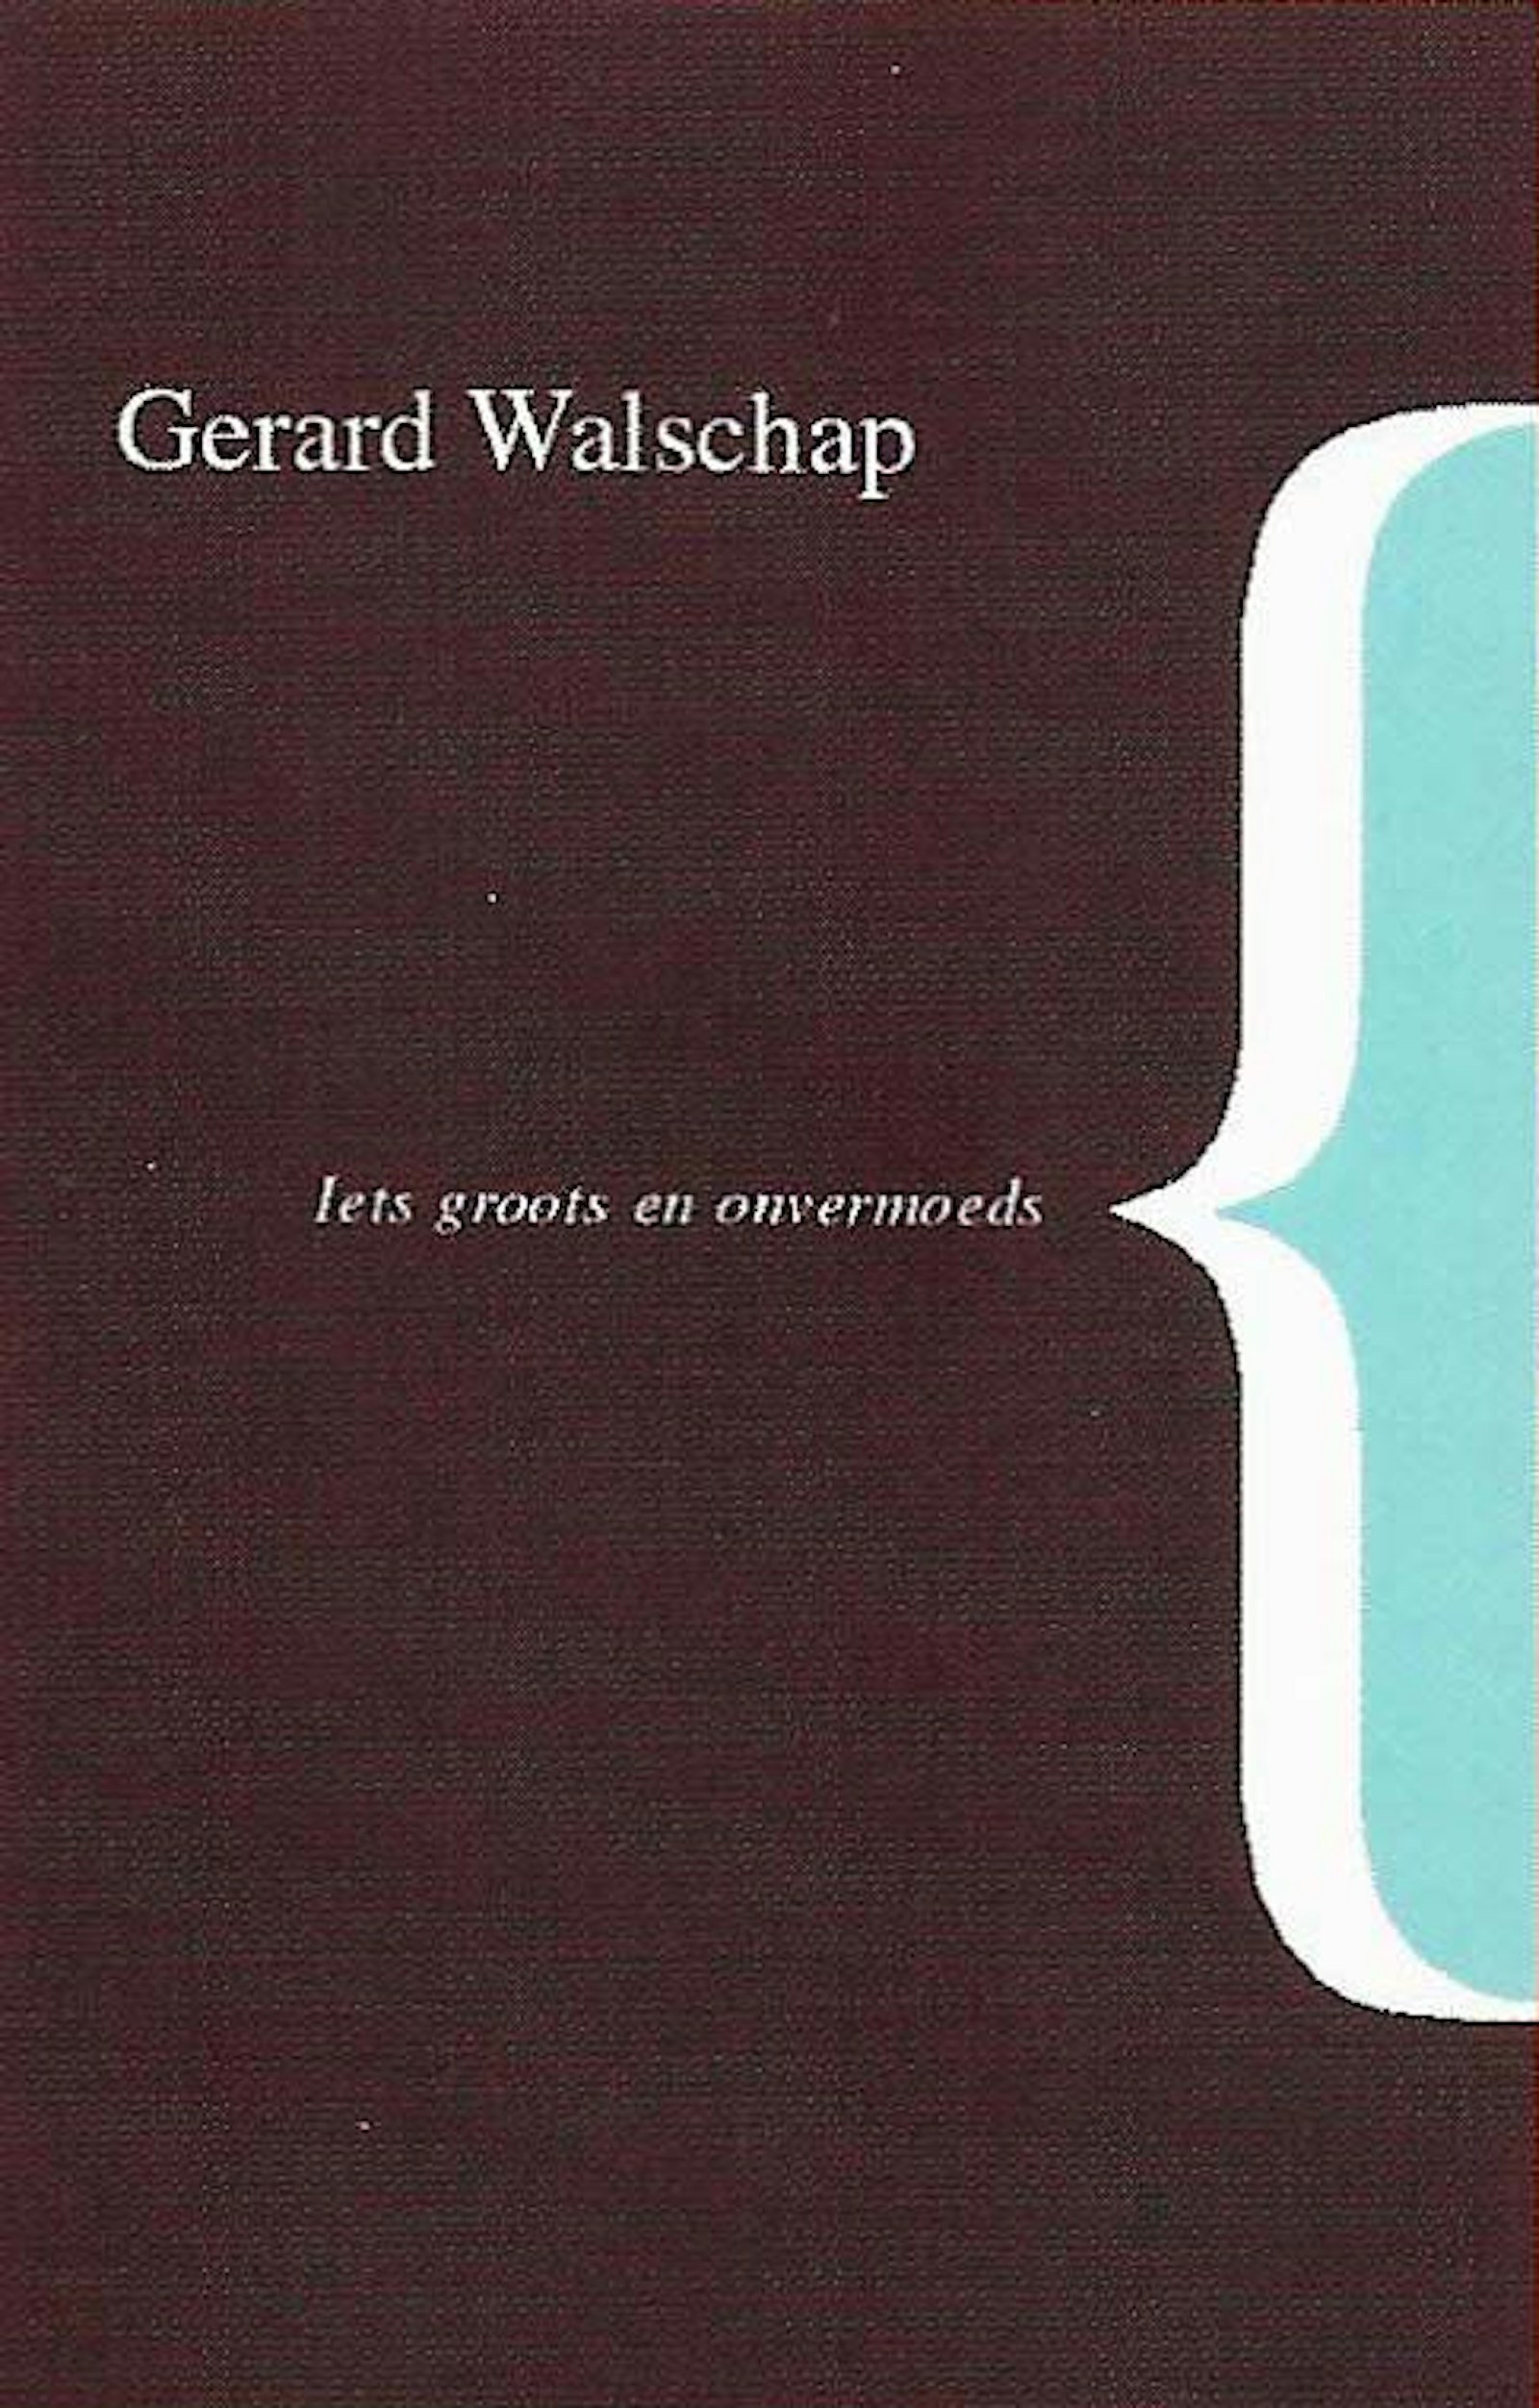 Reeks van nooit eerder gepubliceerde verhalen van Gerard Walschap. In opdracht van Harold Polis en stichting Gerard Walschap (1999-2003)